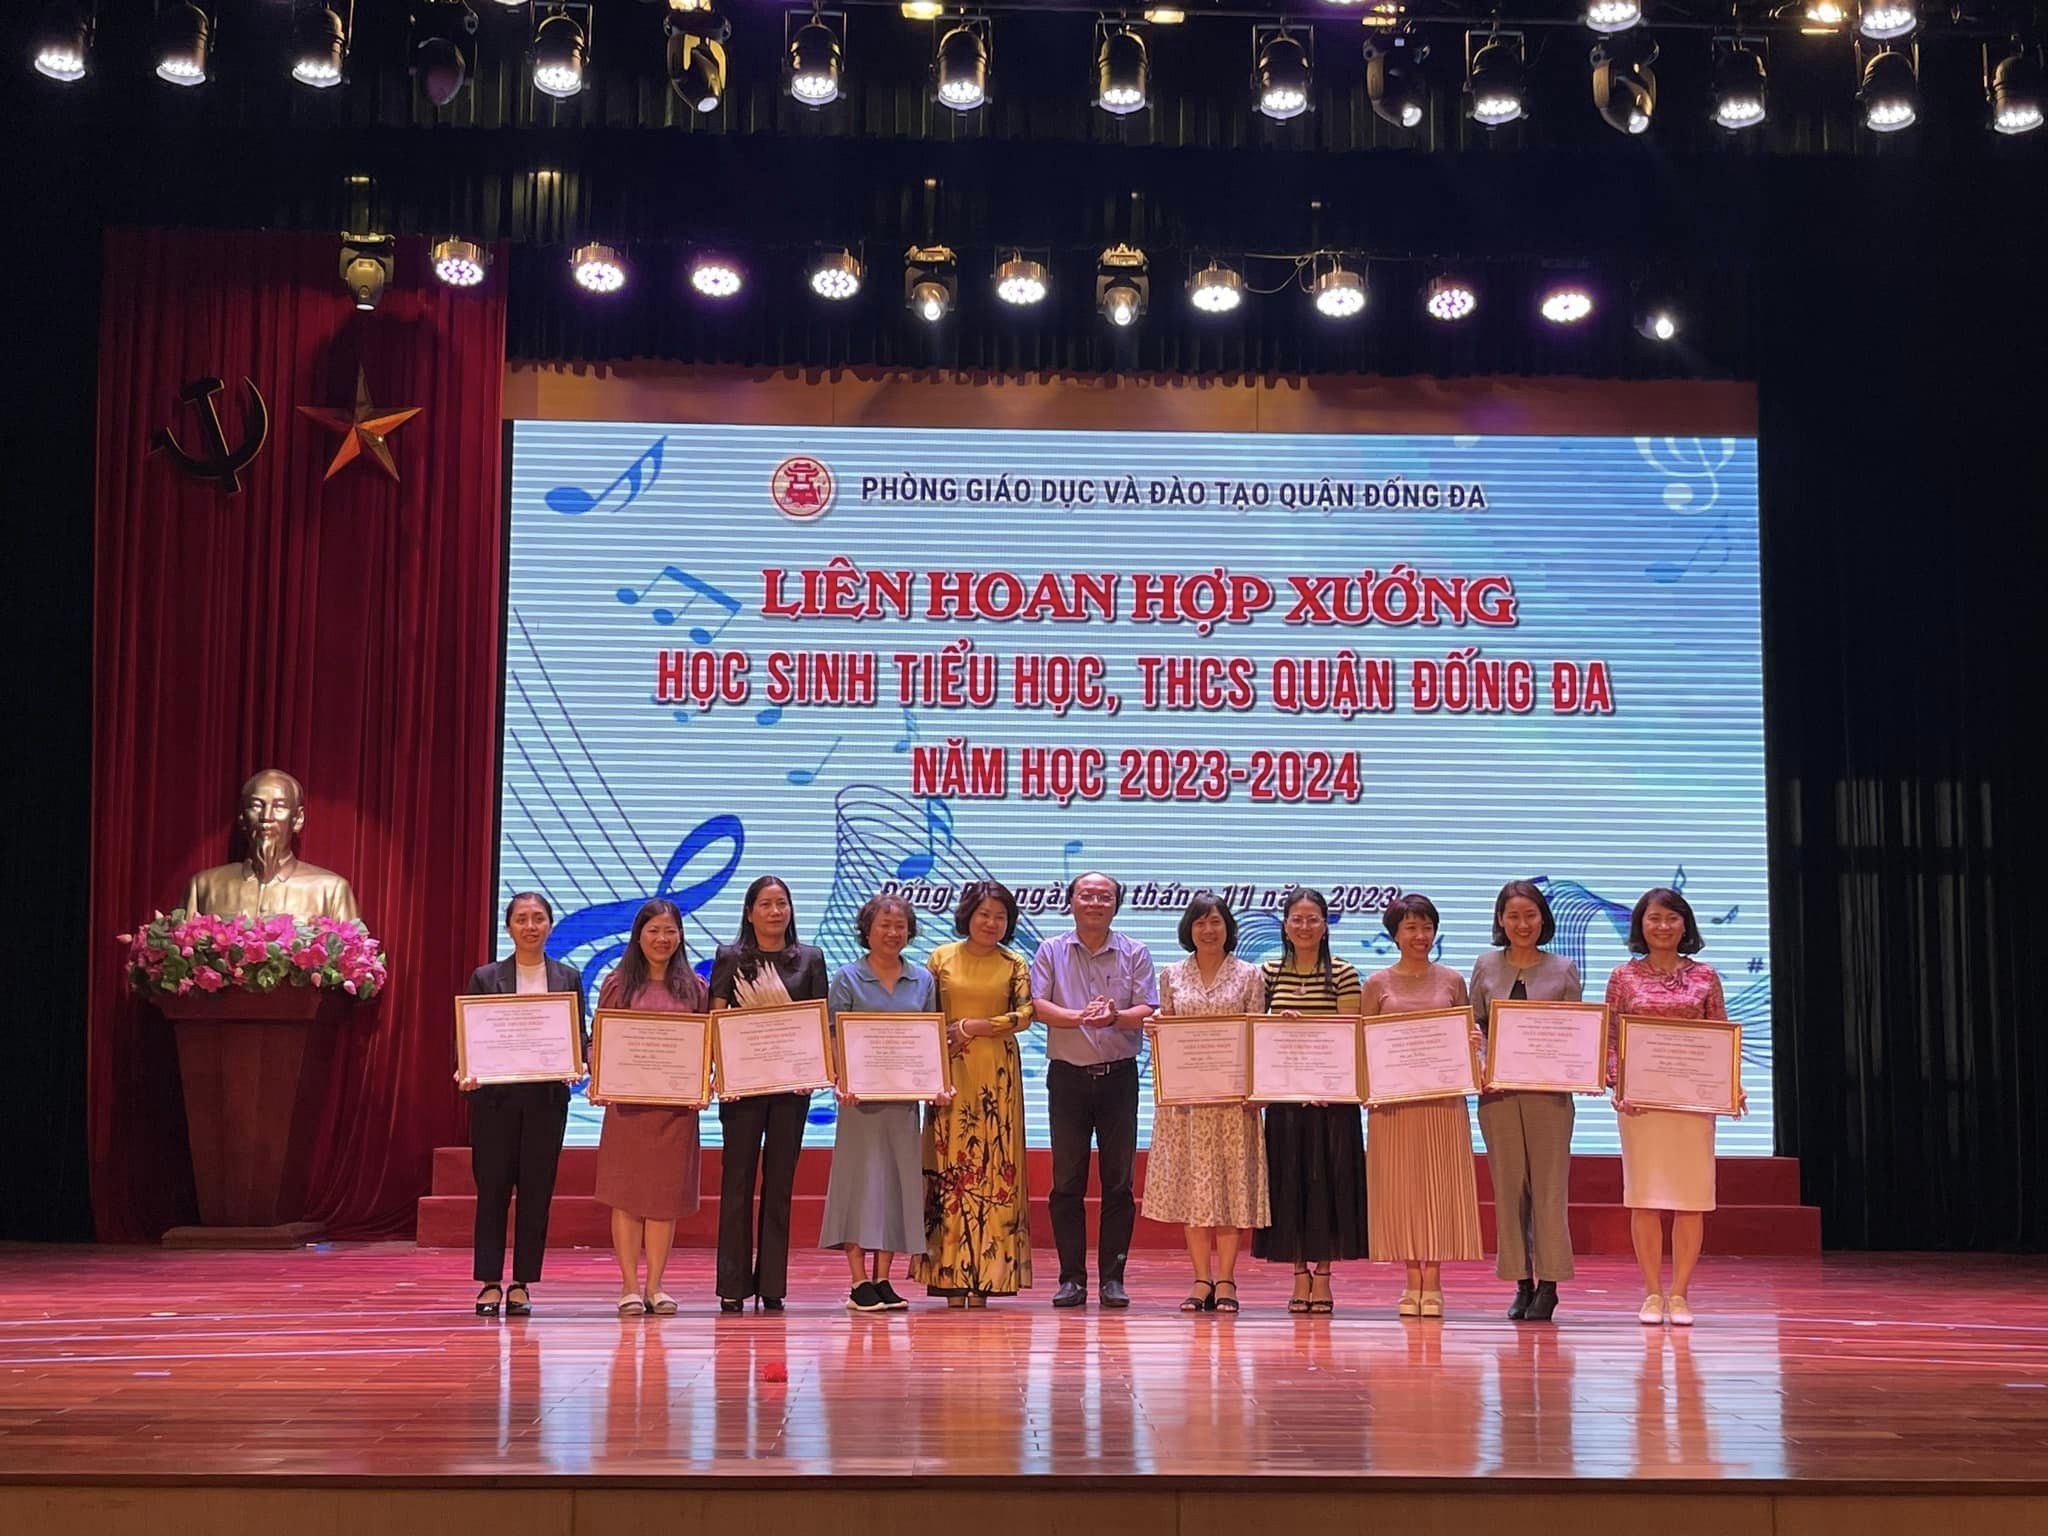 Chúc mừng Tiết mục Liên khúc “Bài ca dâng Đảng” của trường THCS Thái Thịnh đã đạt giải Nhất tại Liên hoan hợp xướng Học sinh Tiểu học, THCS quận Đống Đa năm học 2023 - 2024!!